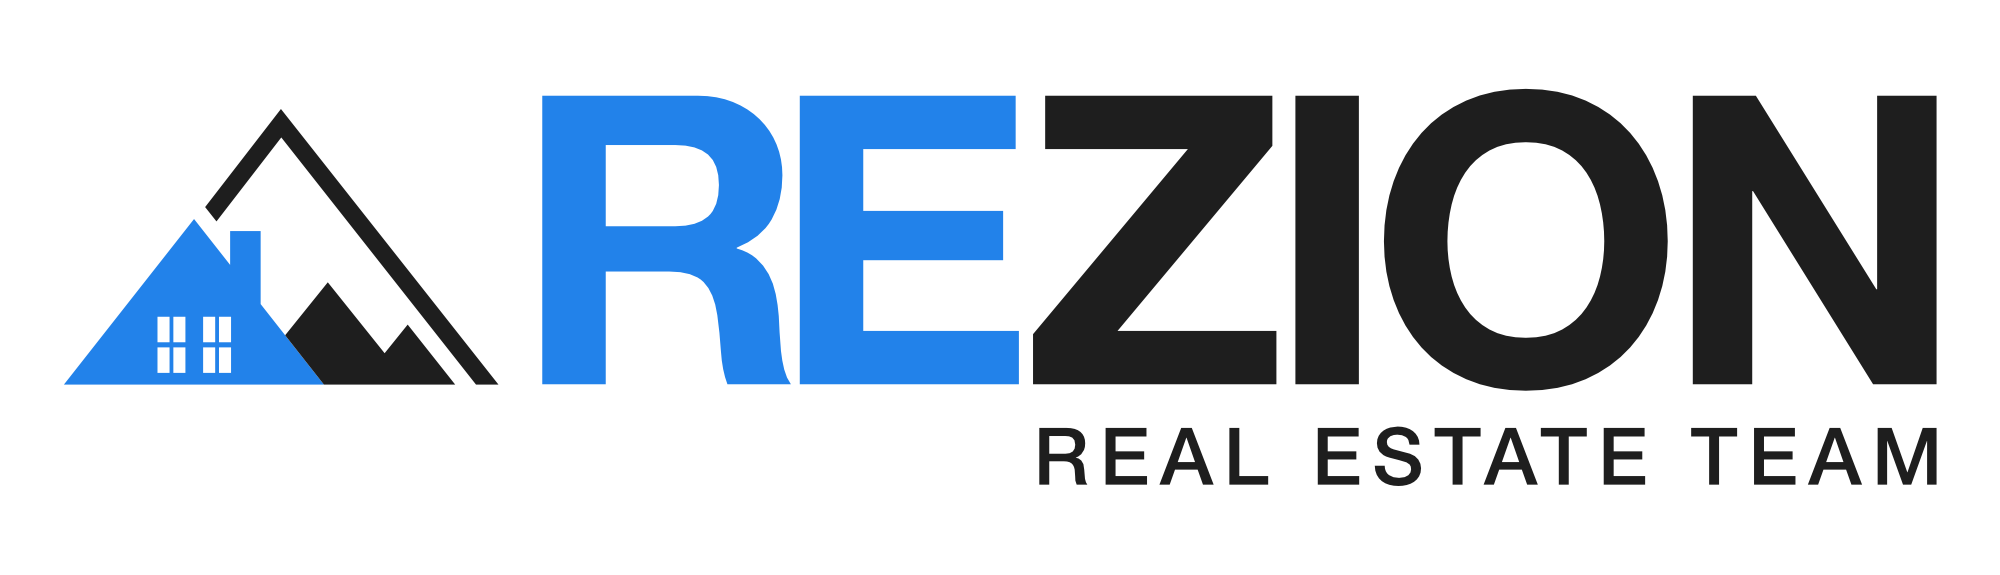 ReZion Real Estate Team